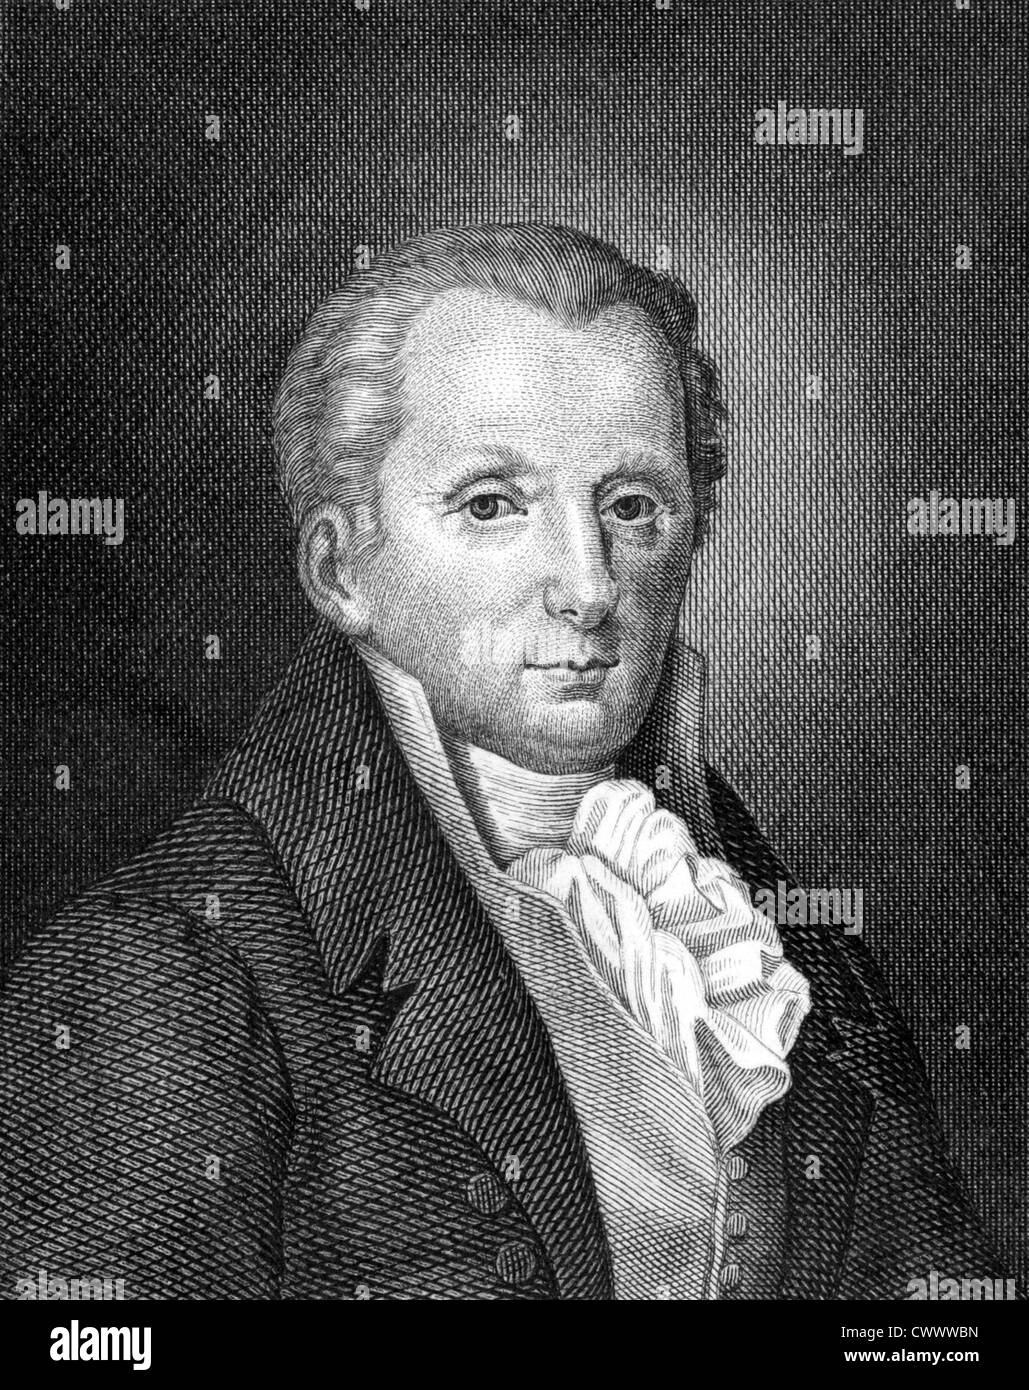 Moritz August von Thummel (1738-1817) sobre el grabado desde 1859. Autor satírico y humorista alemán. Foto de stock